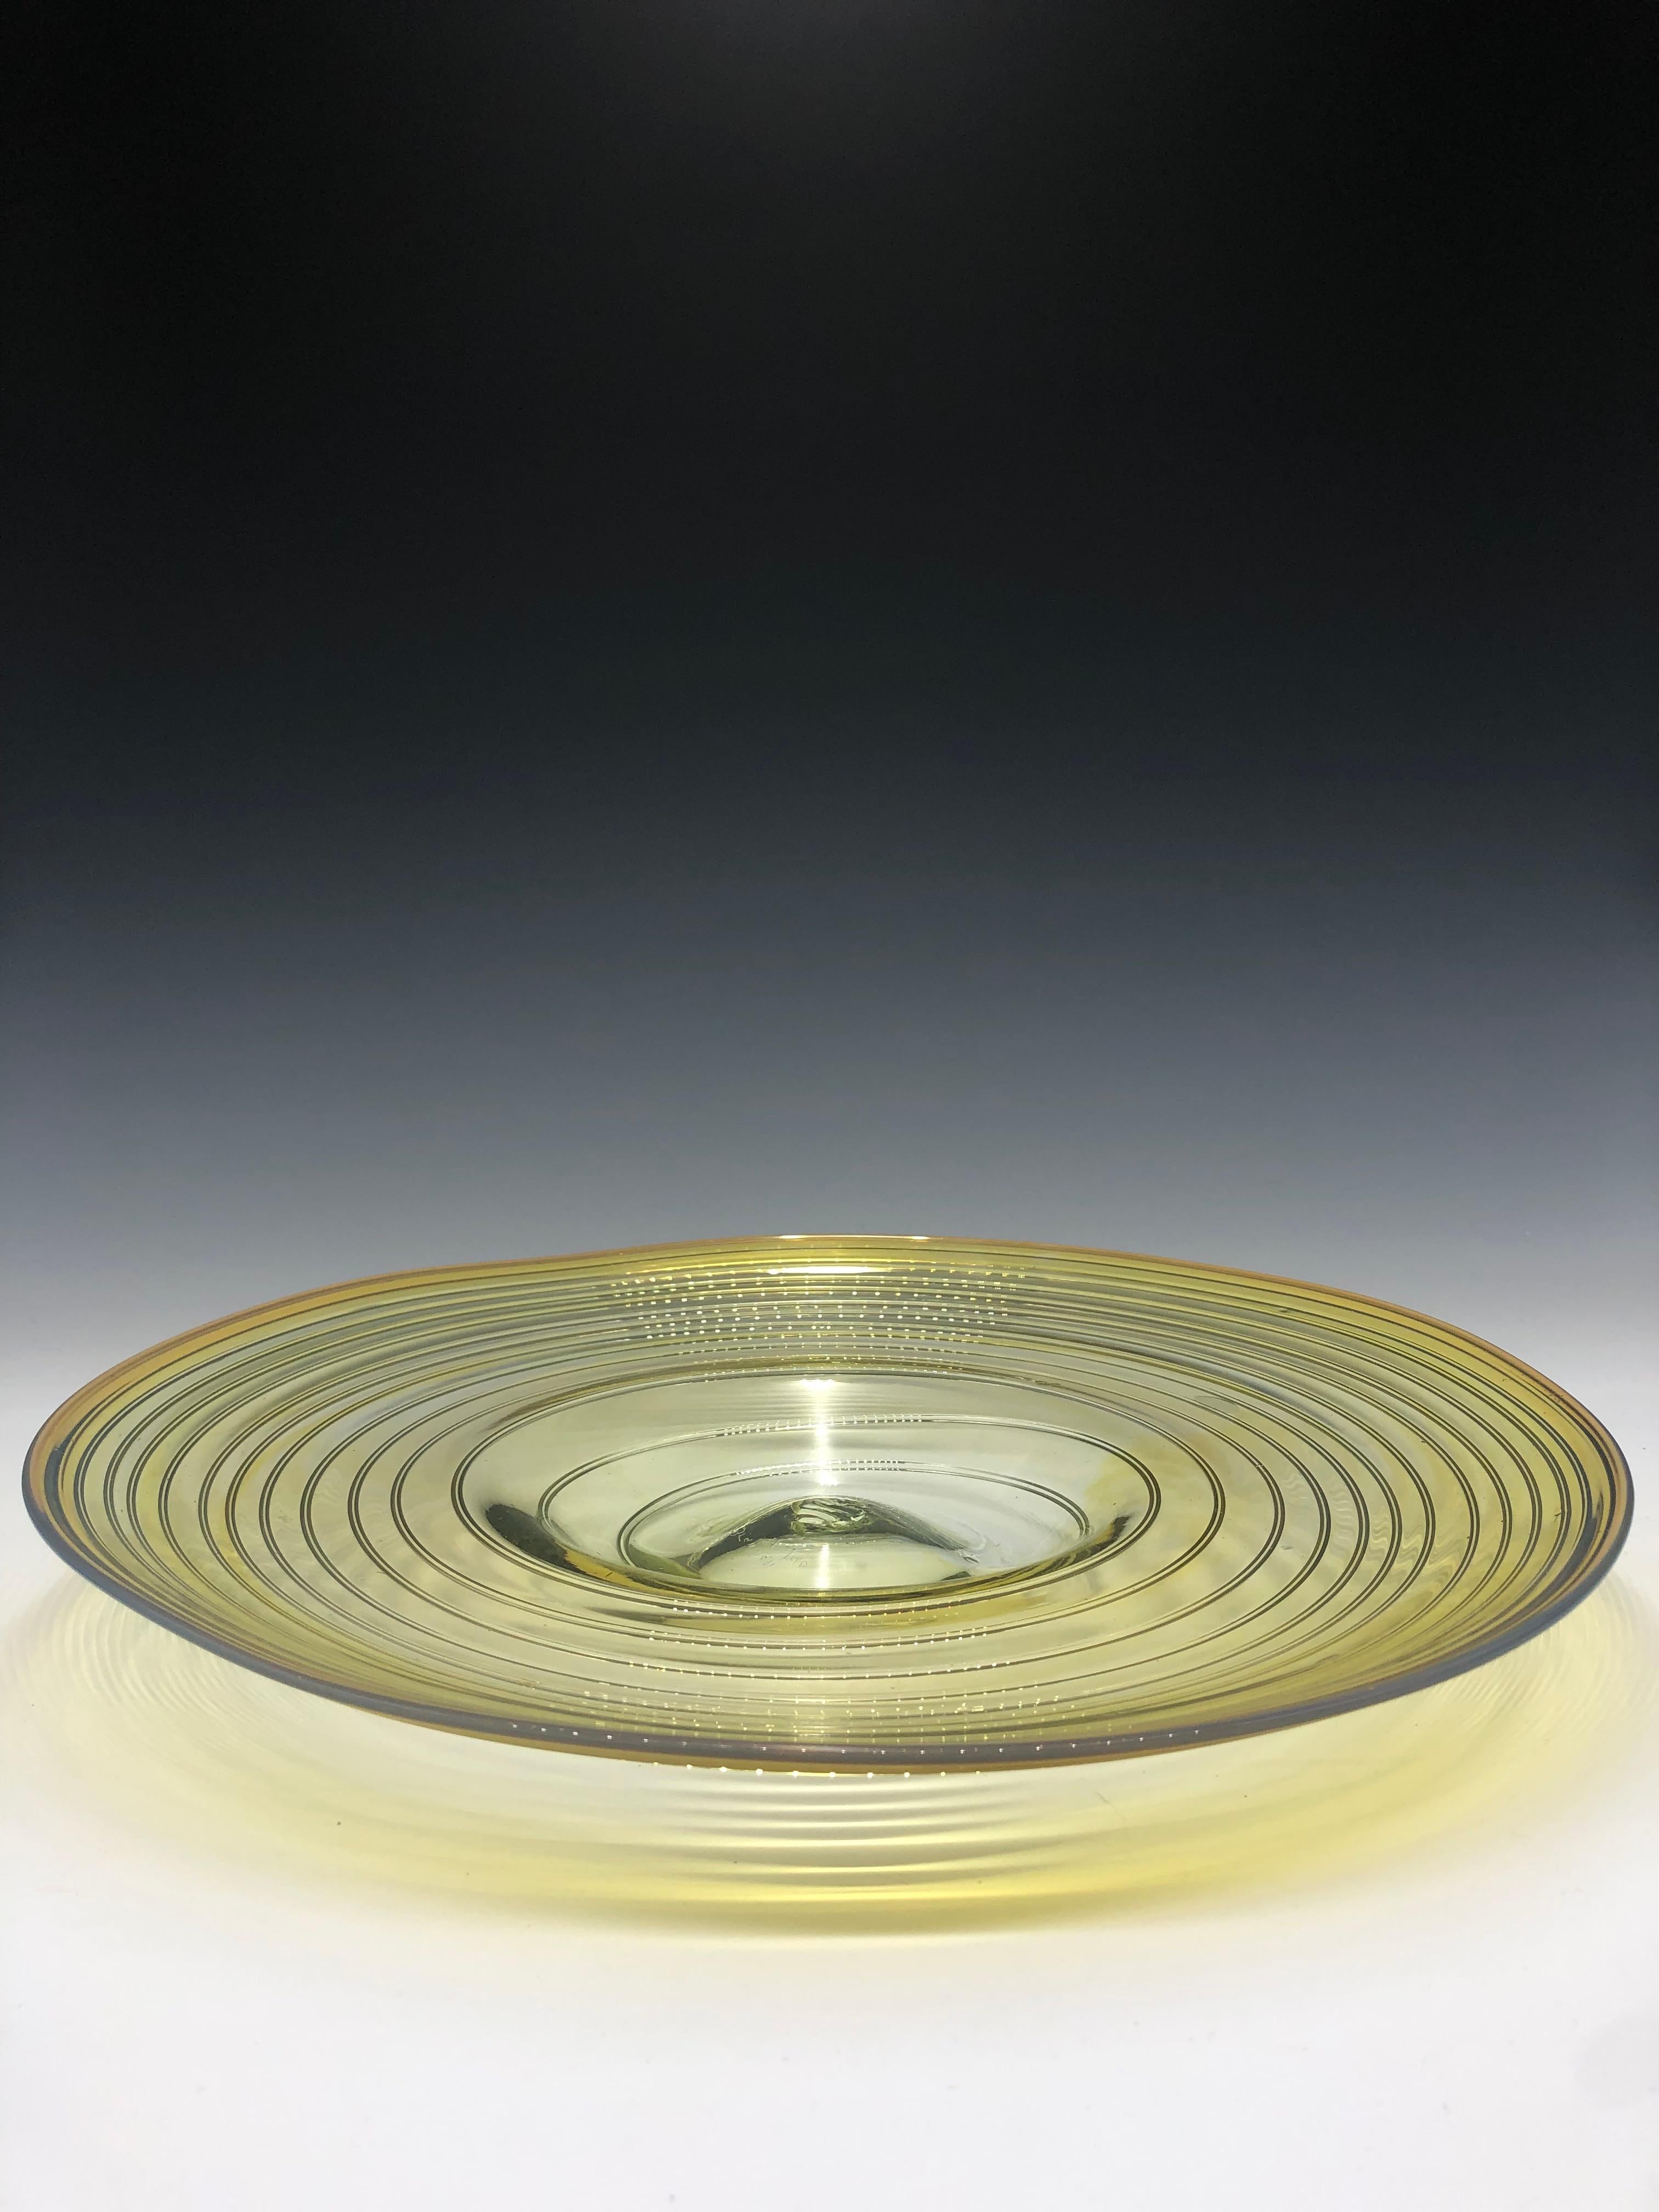 Schöner gelber Glasaufsatz von Peter Bramhall, signiert und datiert 8/2/80. Die Platte mit dem Wirbeldesign ist einzigartig geformt und vollständig mundgeblasen, was eine subtile Pontilmarke auf ihrem Boden hinterlässt. Die Farbe des Glases selbst